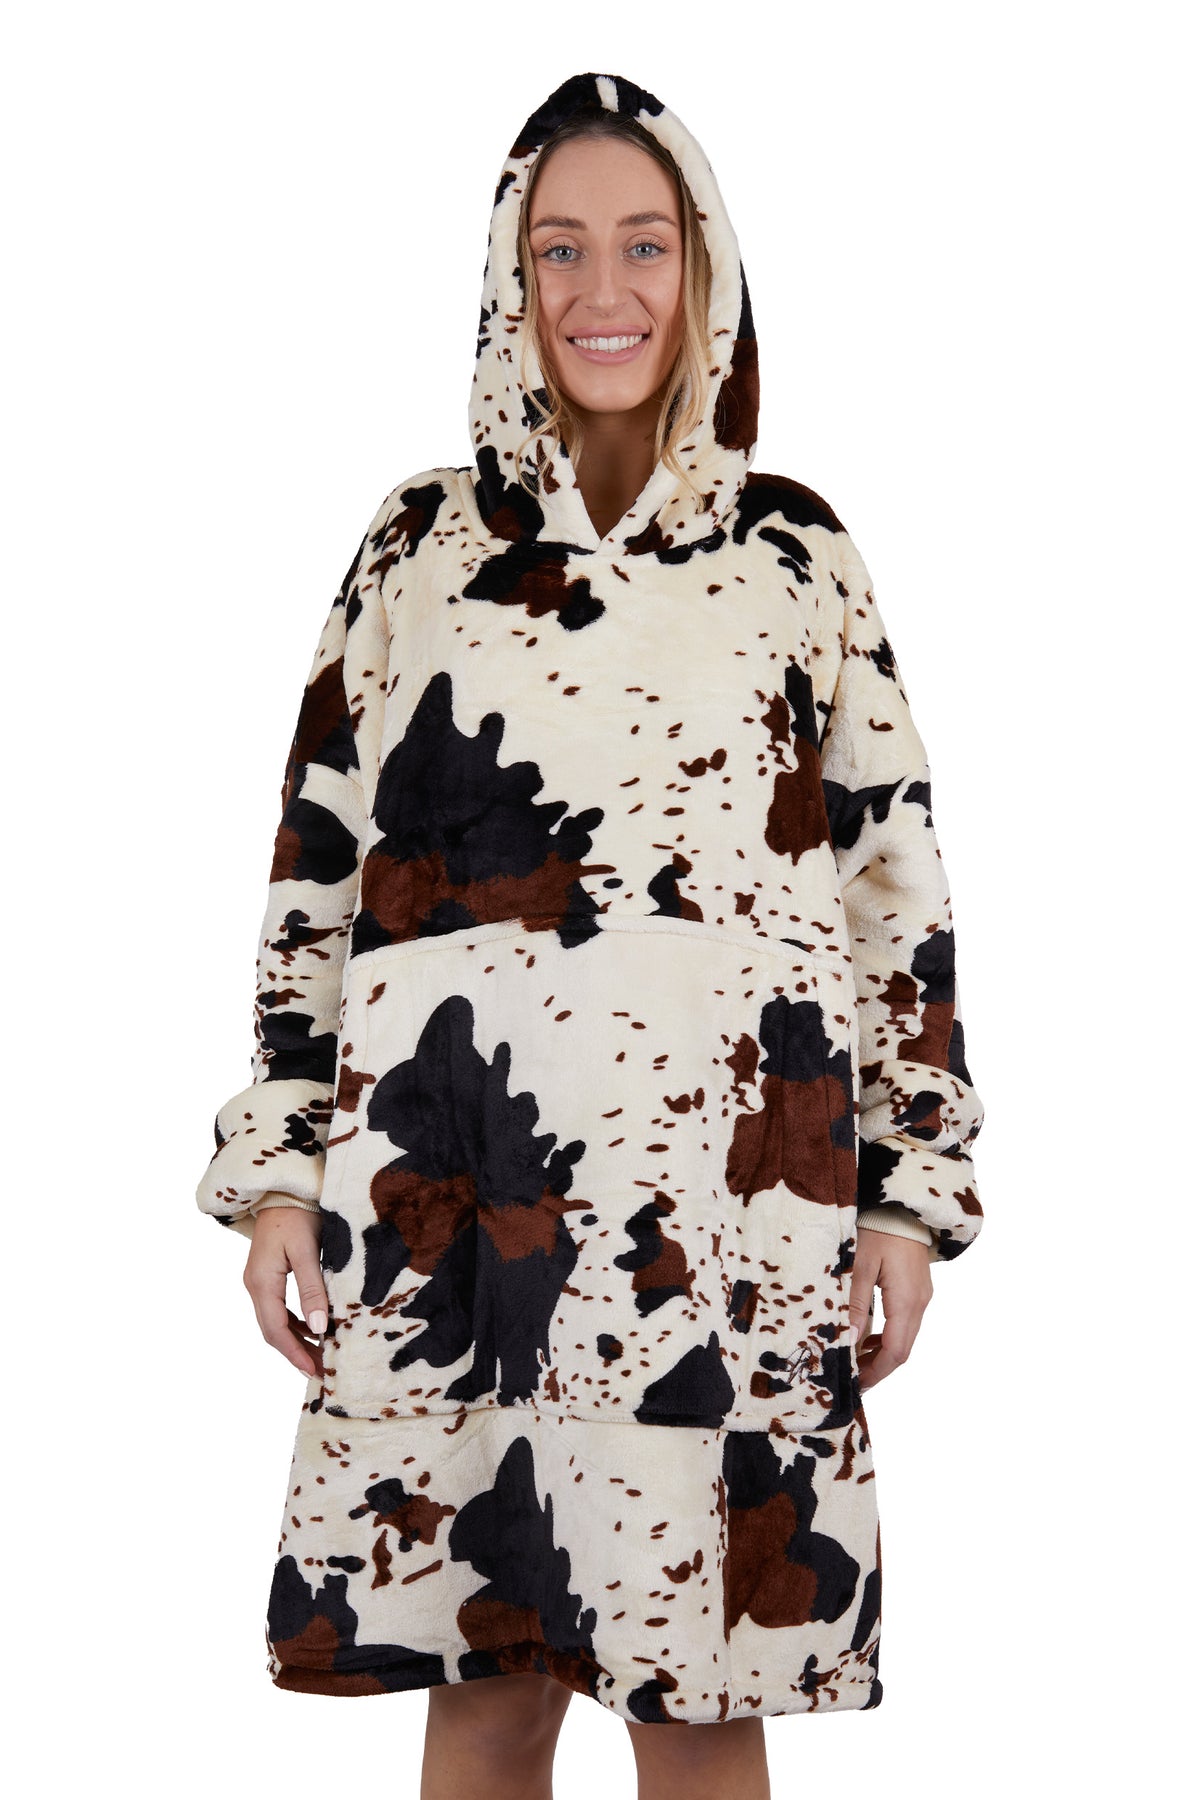 Pure Western Adult Cow Print Snuggle Hoodie